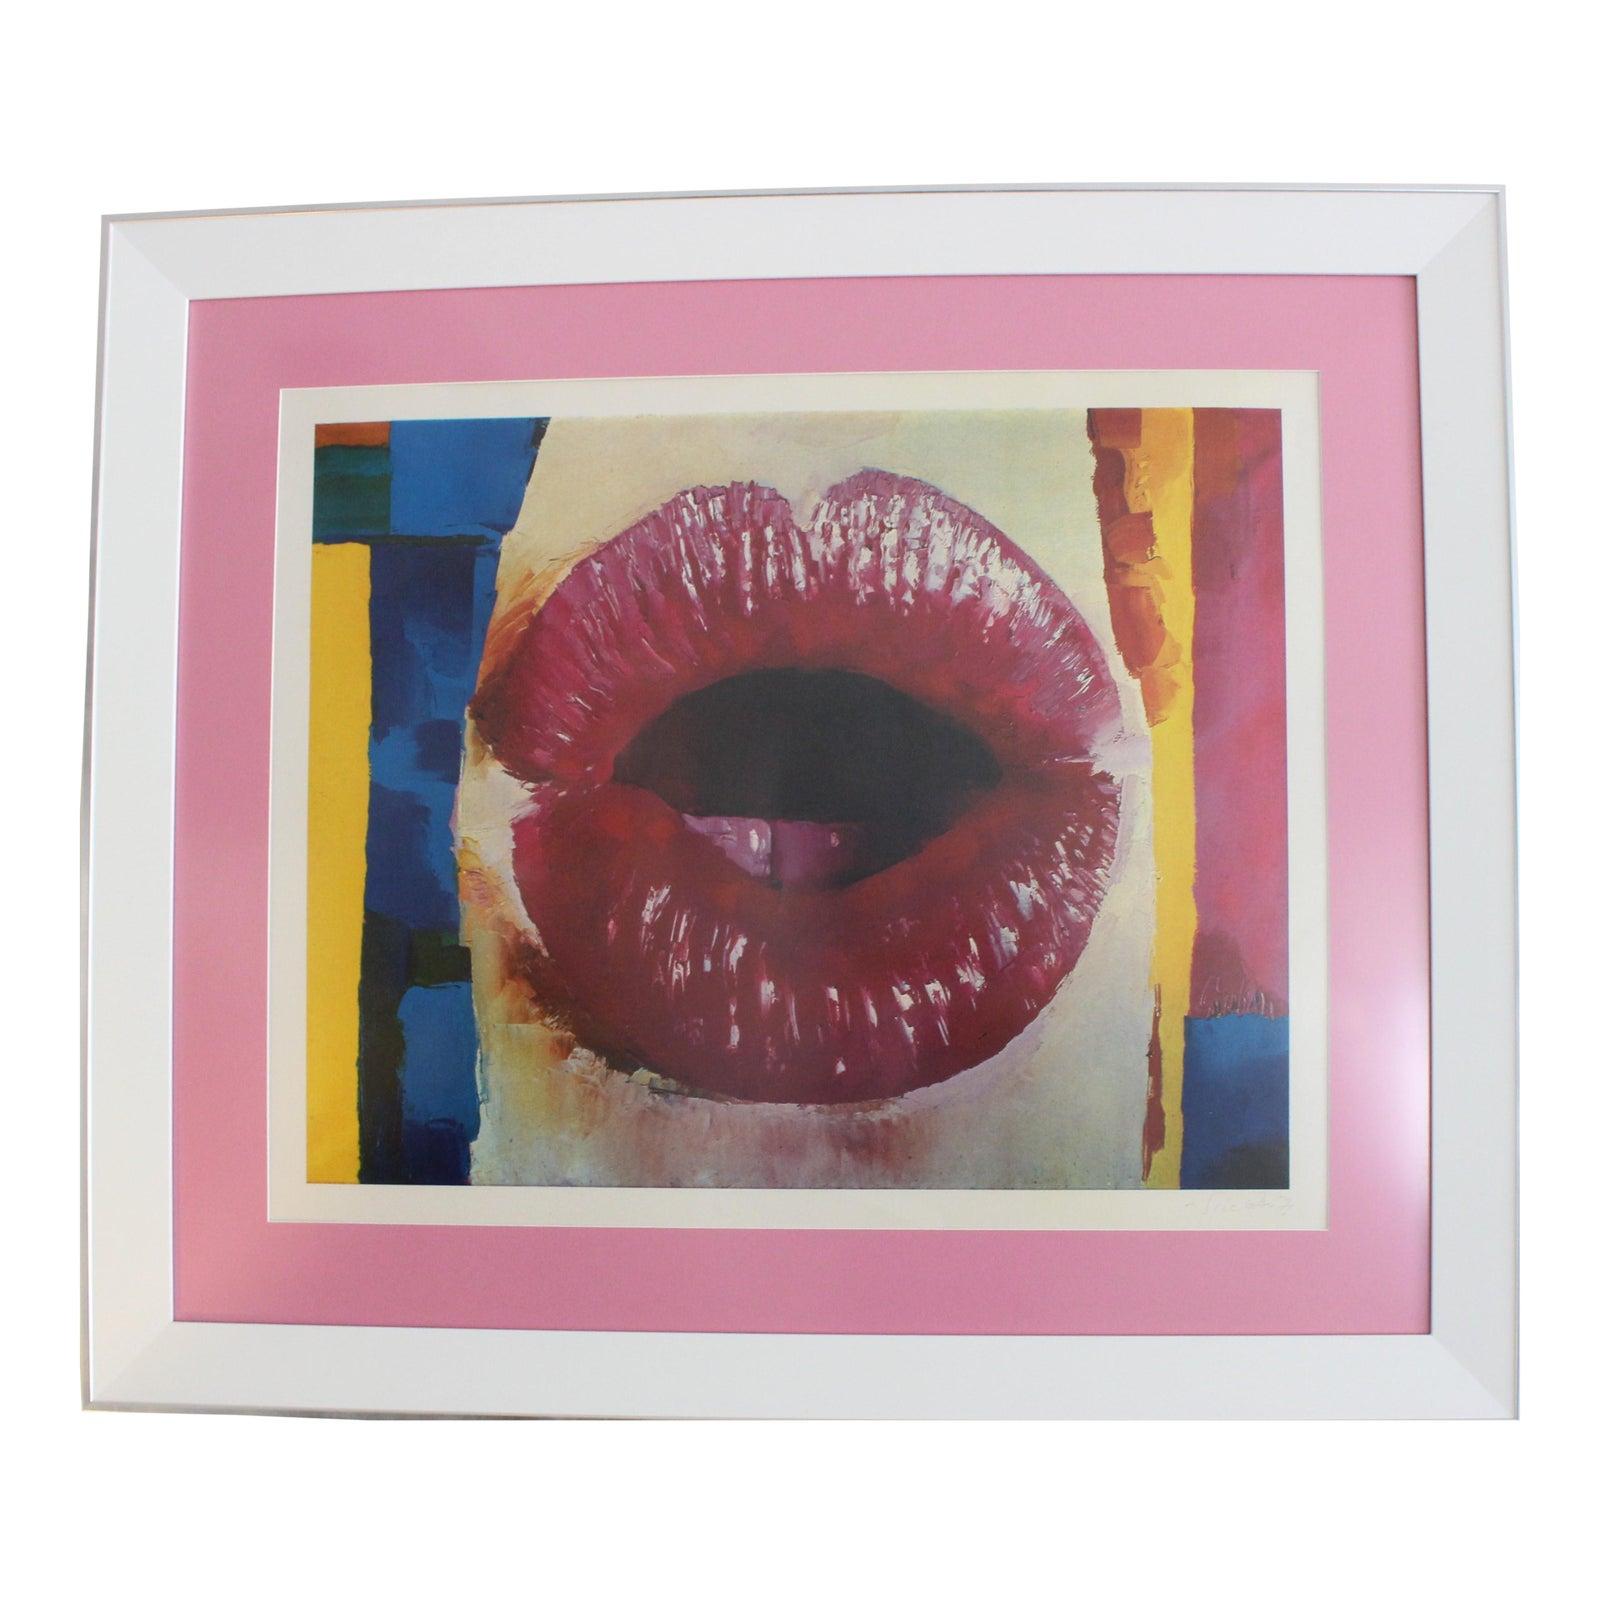 Nicola Simbari "Lips" Lithograph Print For Sale